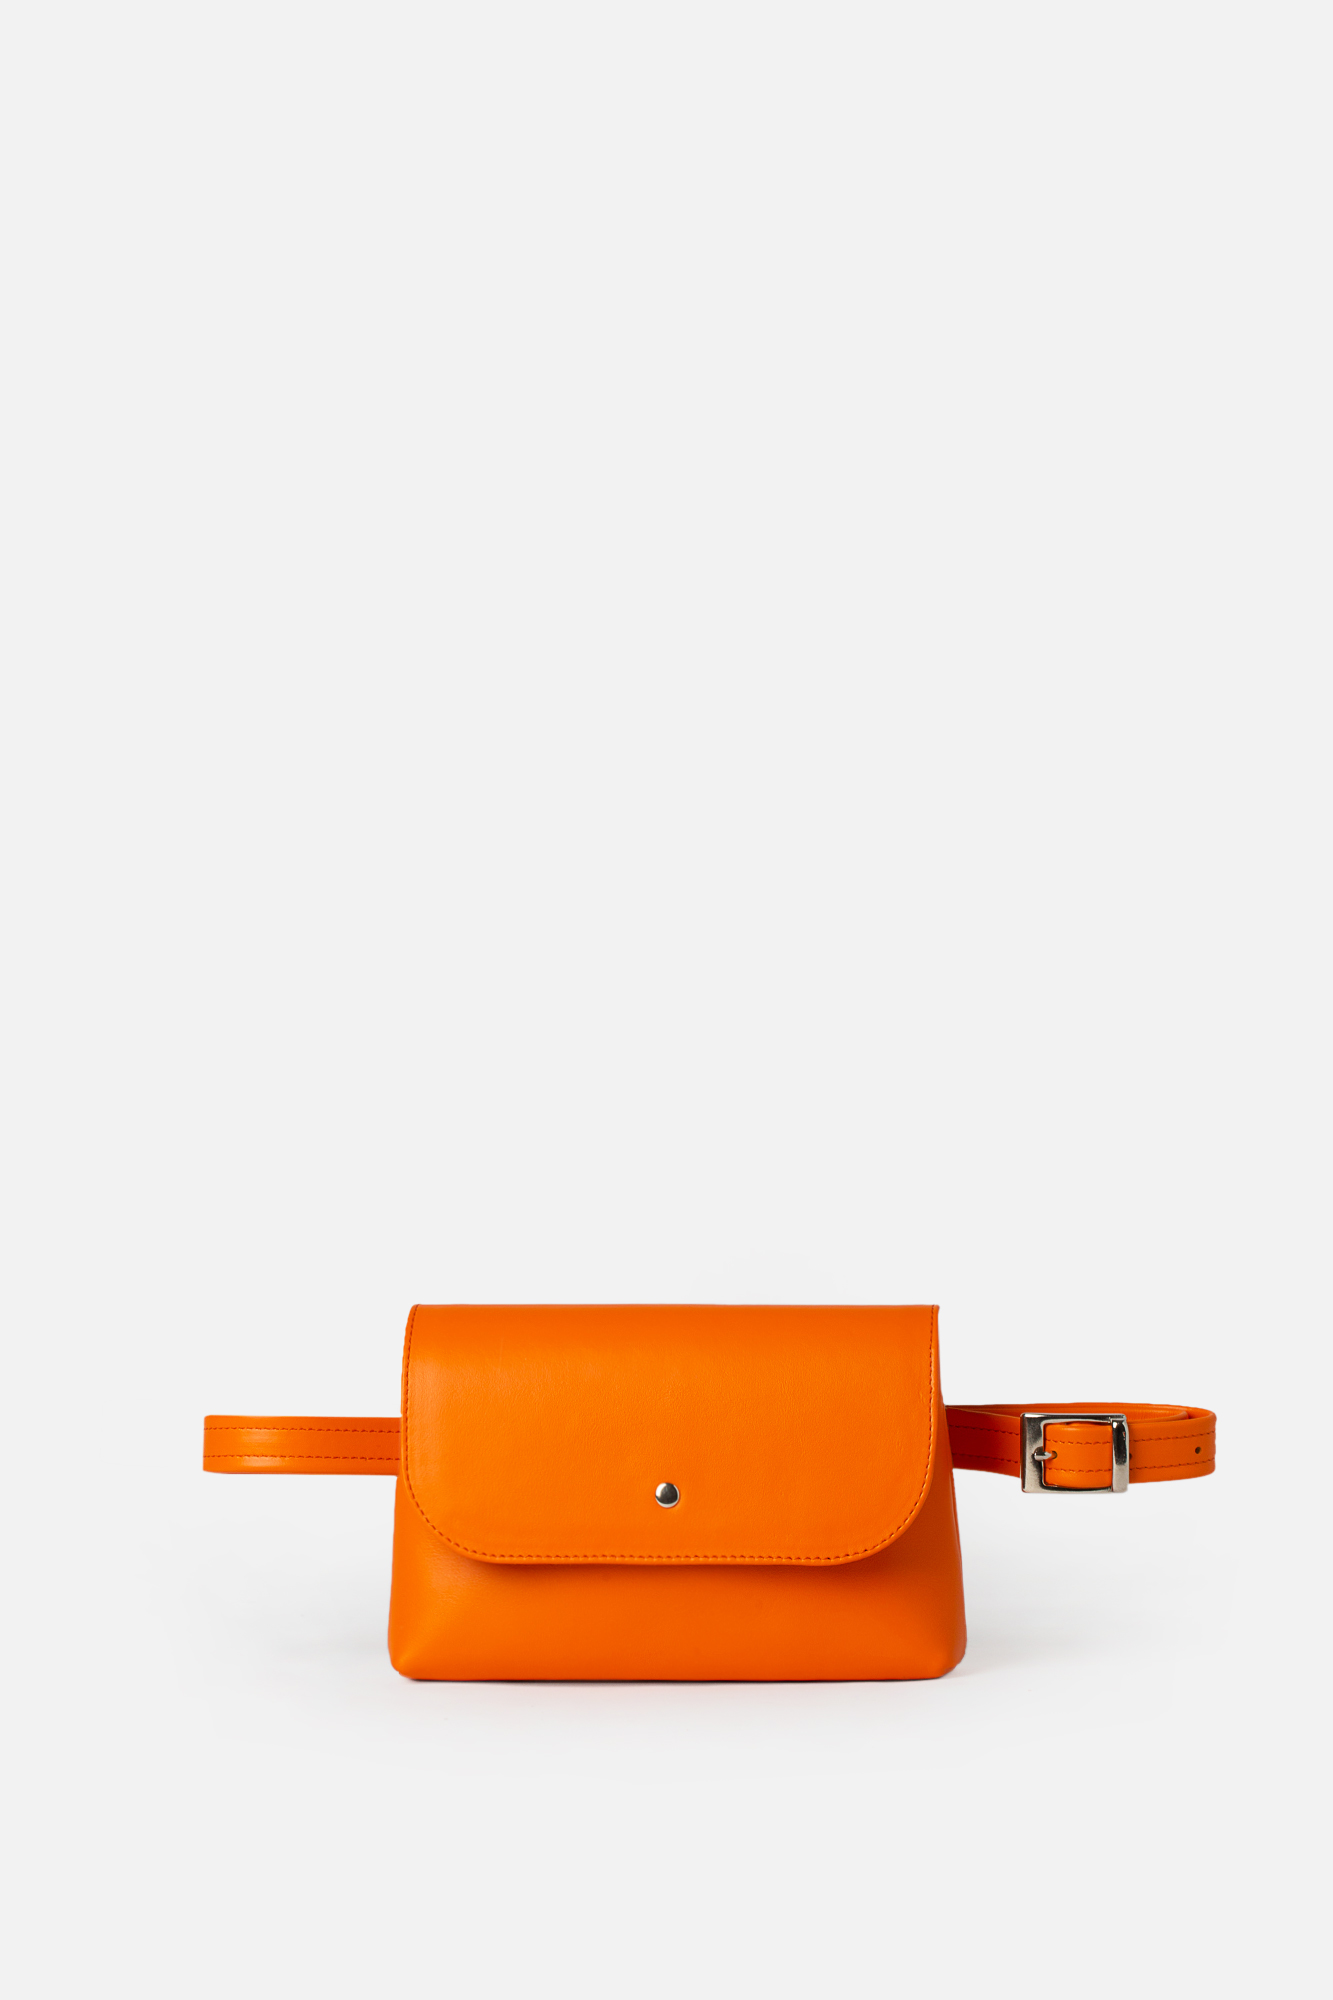 Geantă borsetă TRIA portocalie - Laura Olaru